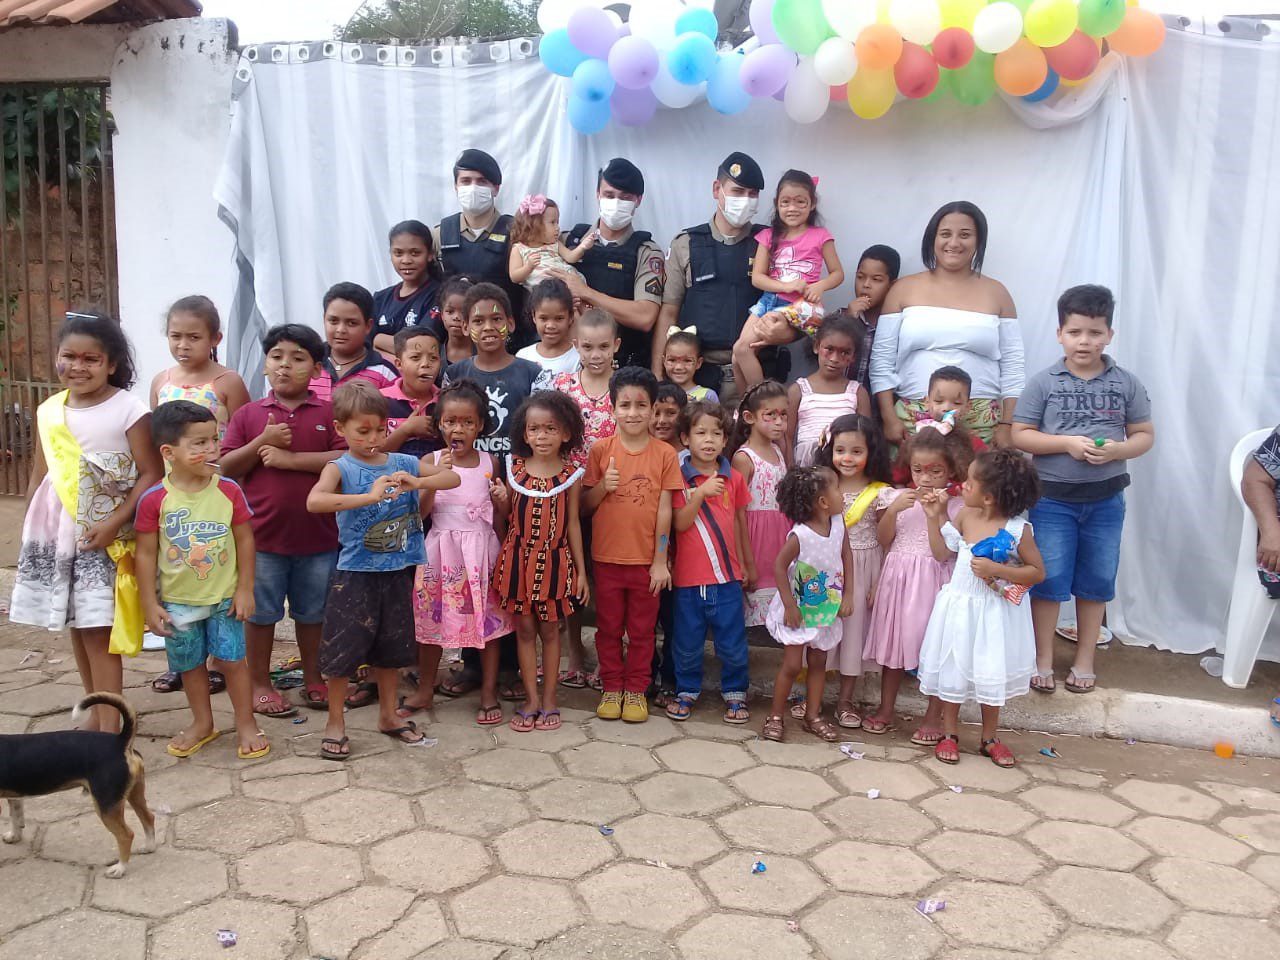 Destacamento de Vargem Alegre promove ação social no Dia das Crianças